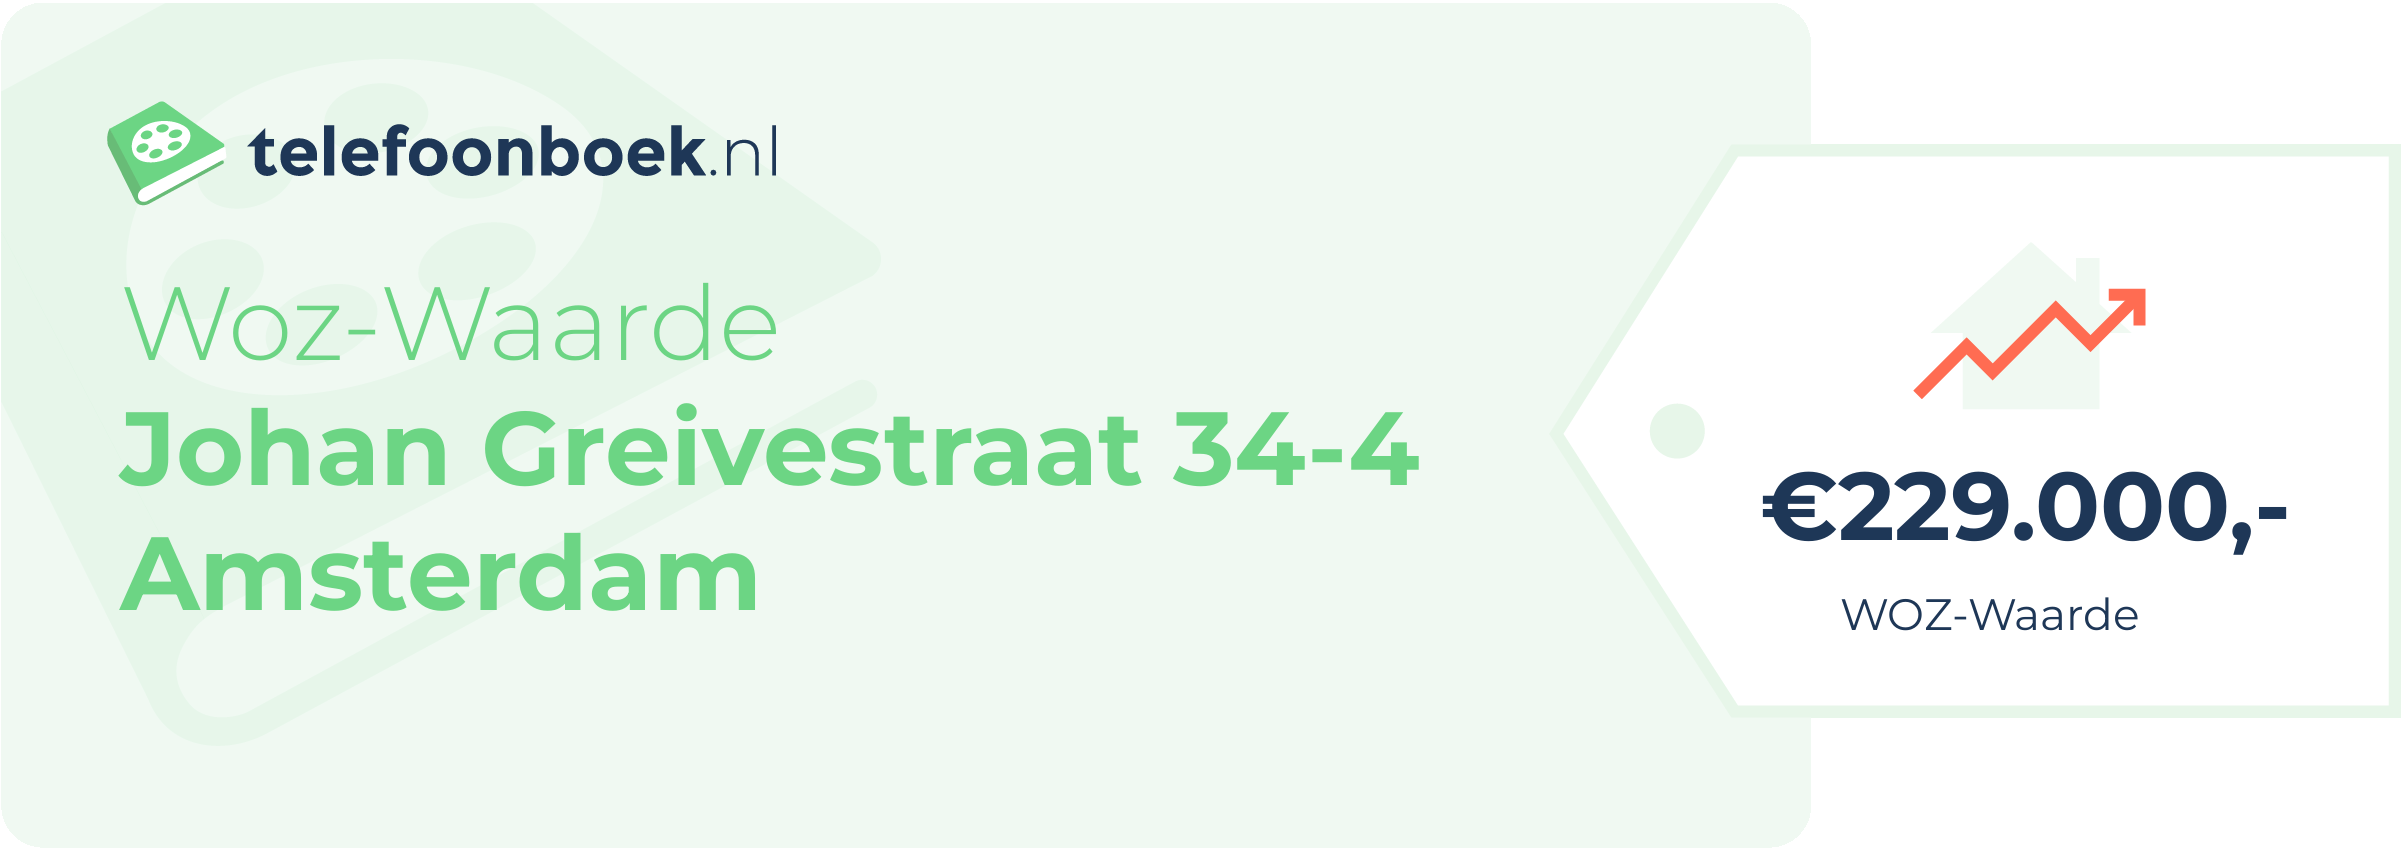 WOZ-waarde Johan Greivestraat 34-4 Amsterdam